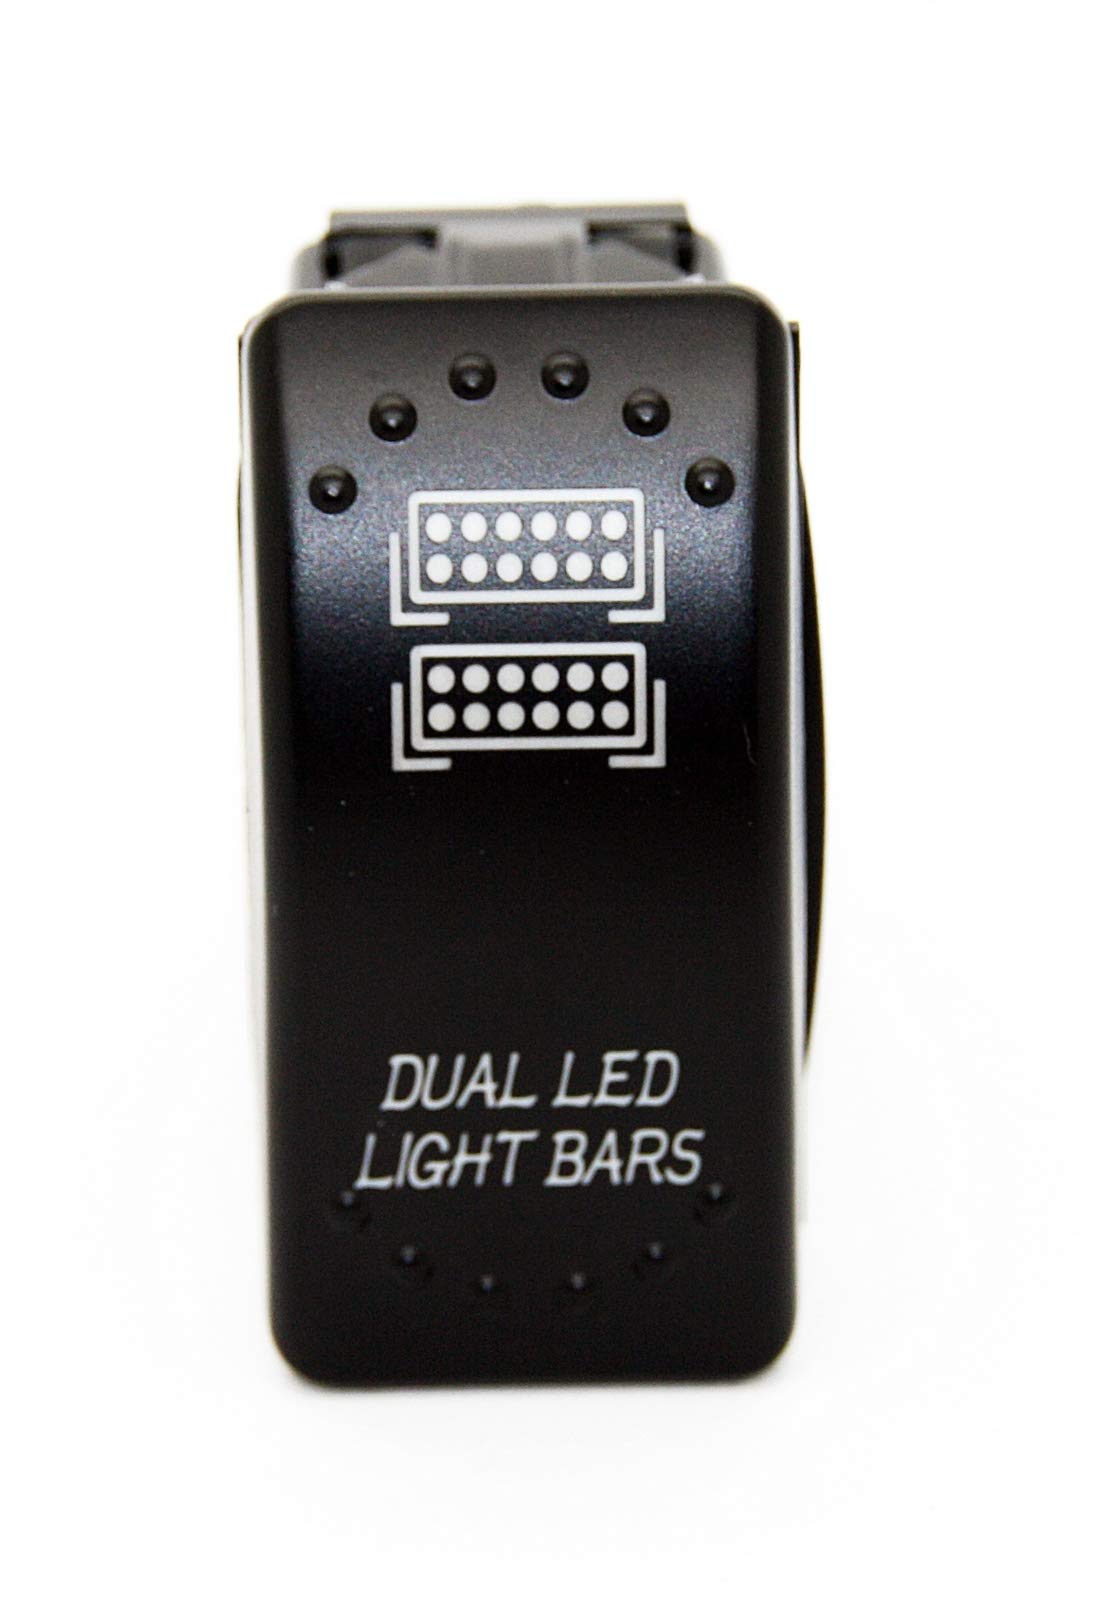 Zusatz Light Bar- Dual Led Light Bars JJ35 - Symbol Kippschalter Wippschalter Schalter Auto Boot KFZ LKW Licht 12V 24V von LED-Mafia